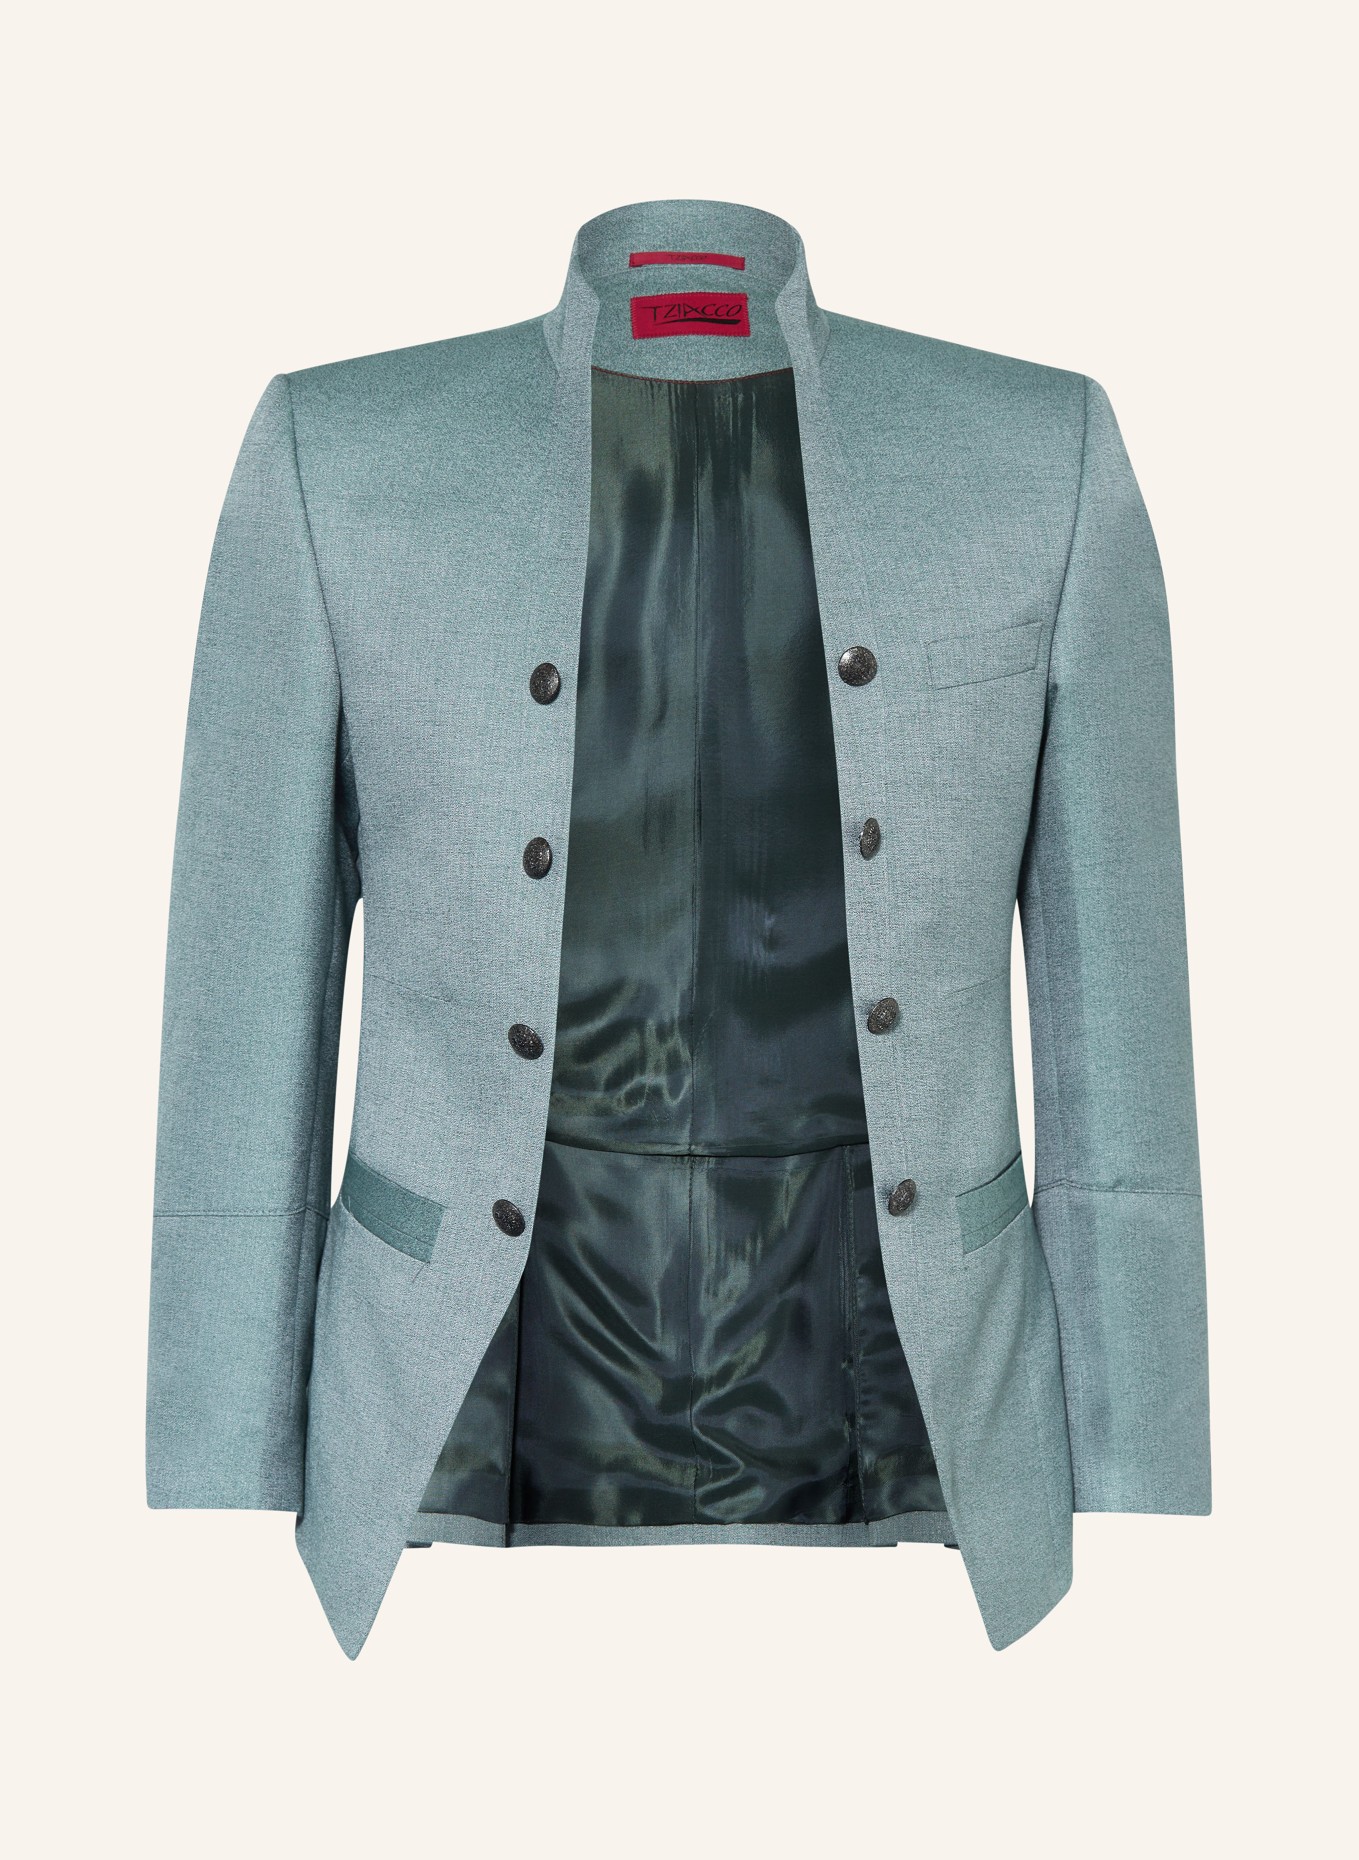 WILVORST Tailored jacket extra slim fit, Color: 045 grün (Image 1)